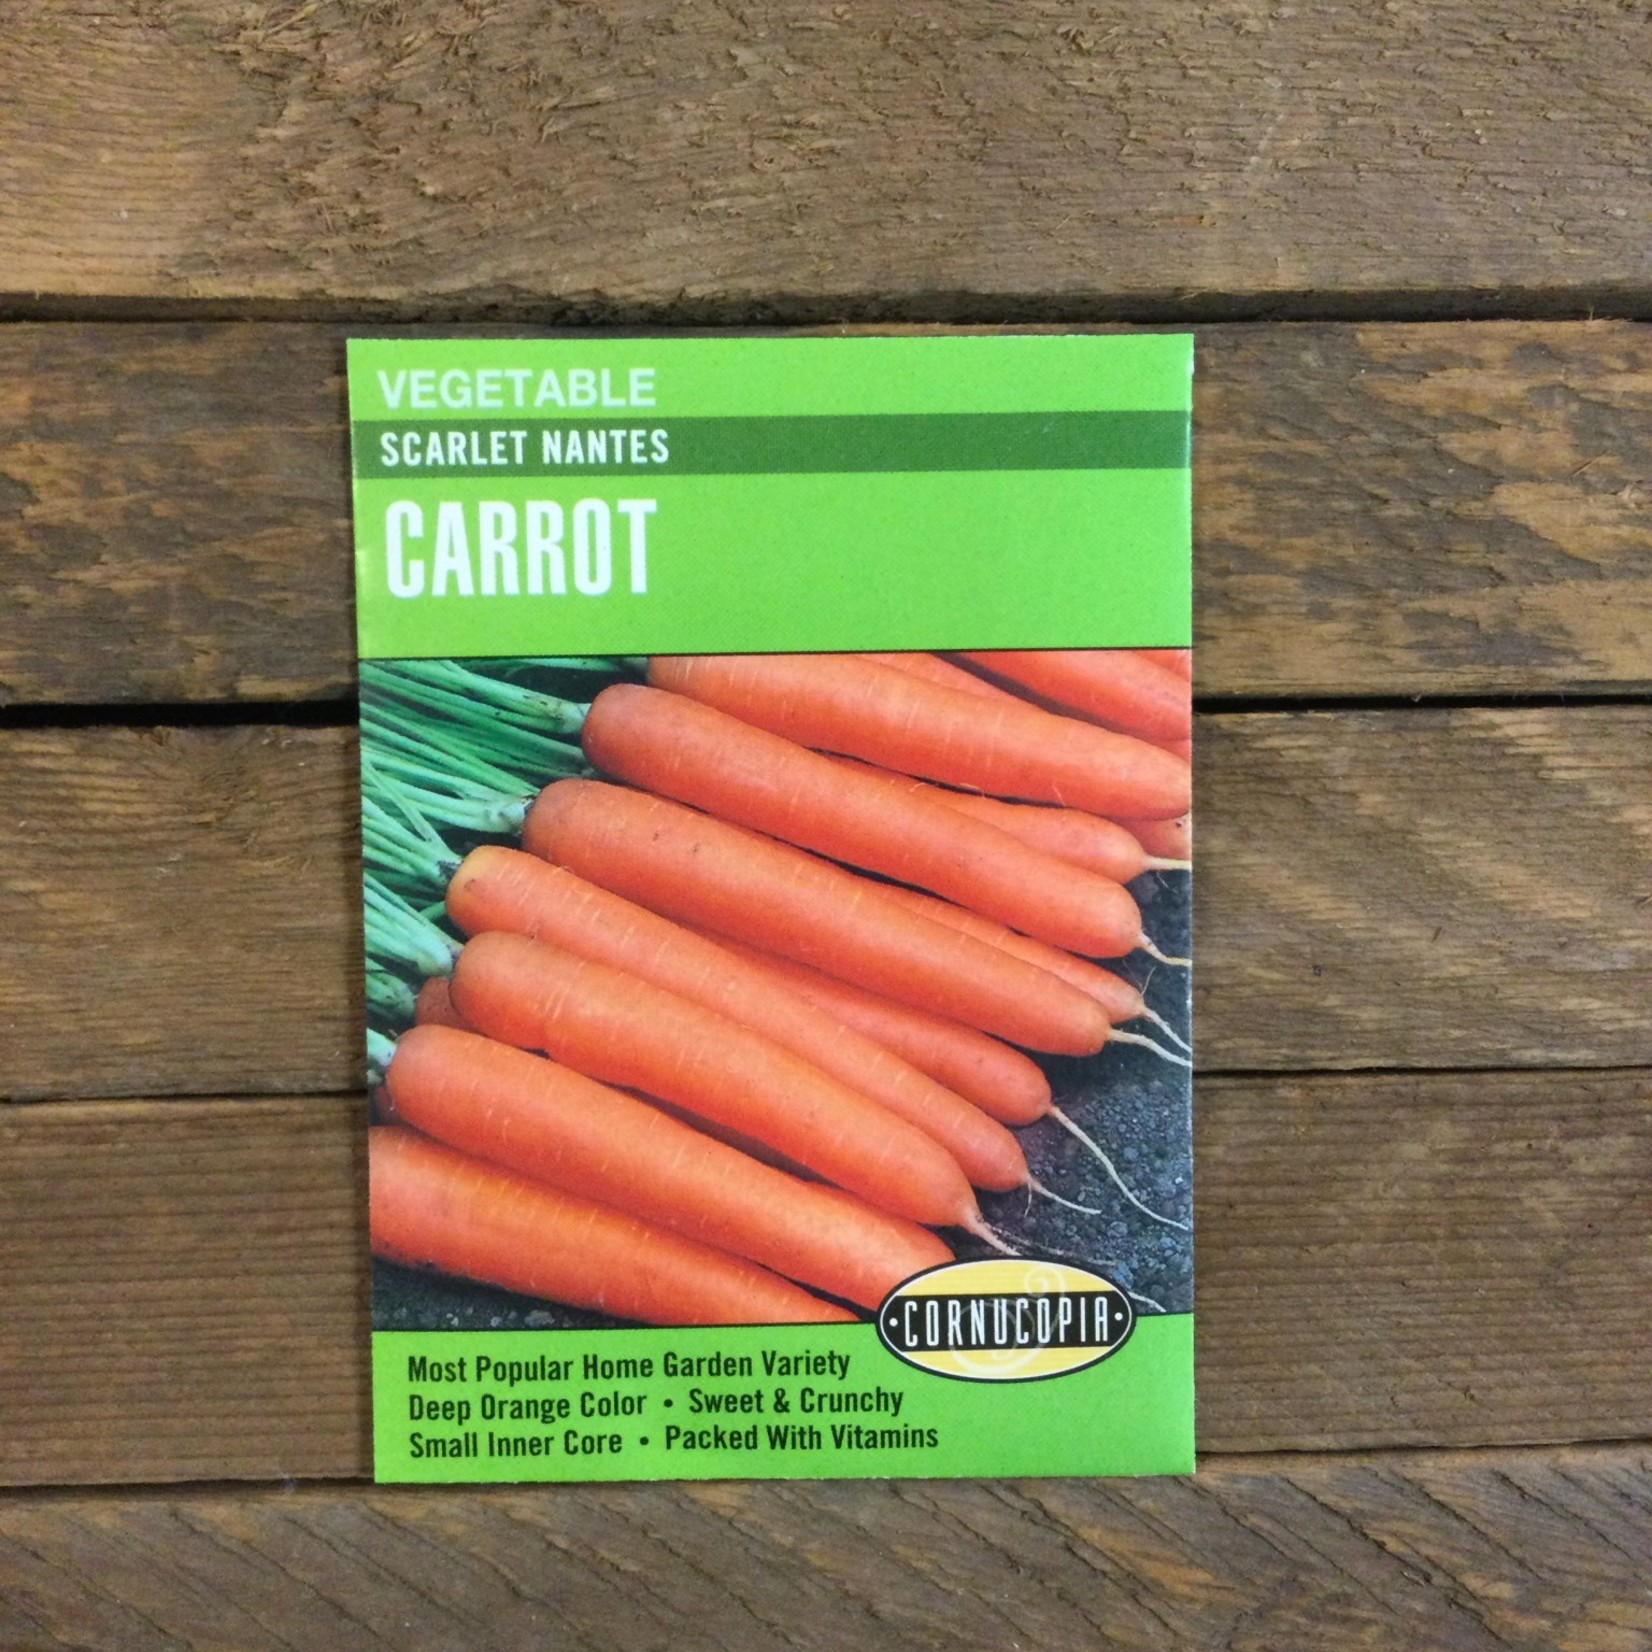 Cornucopia Carrot - Carrot Scarlet Nantes